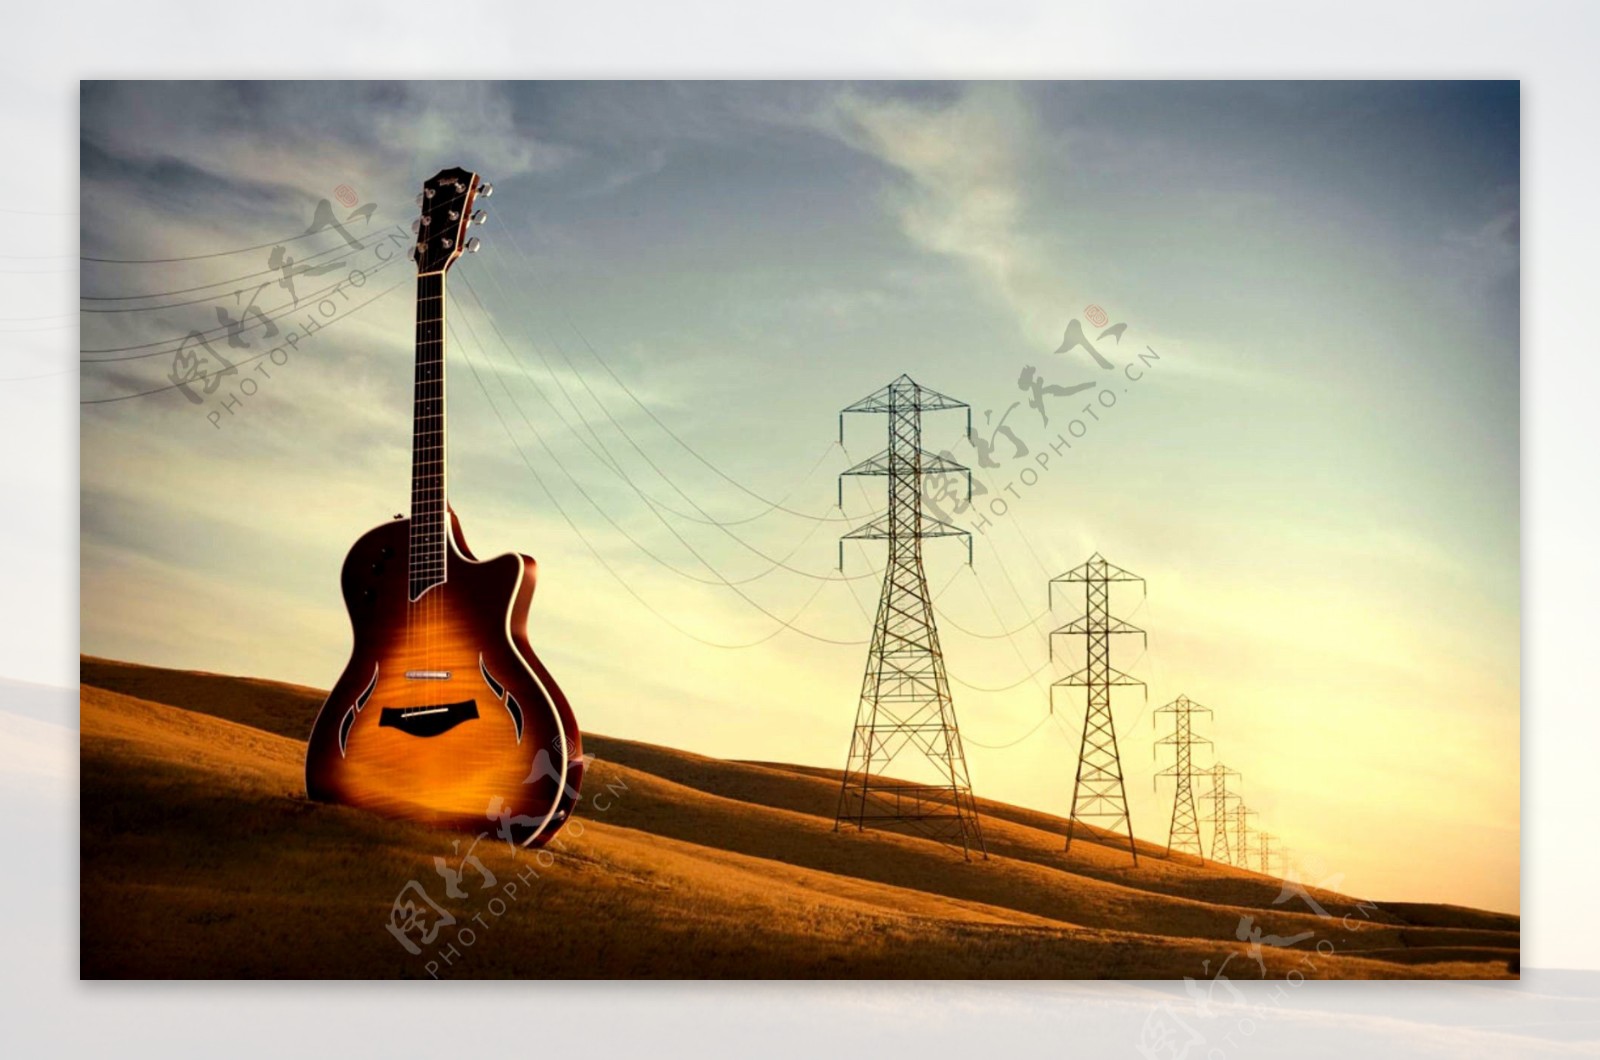 吉他与电线塔创意图片